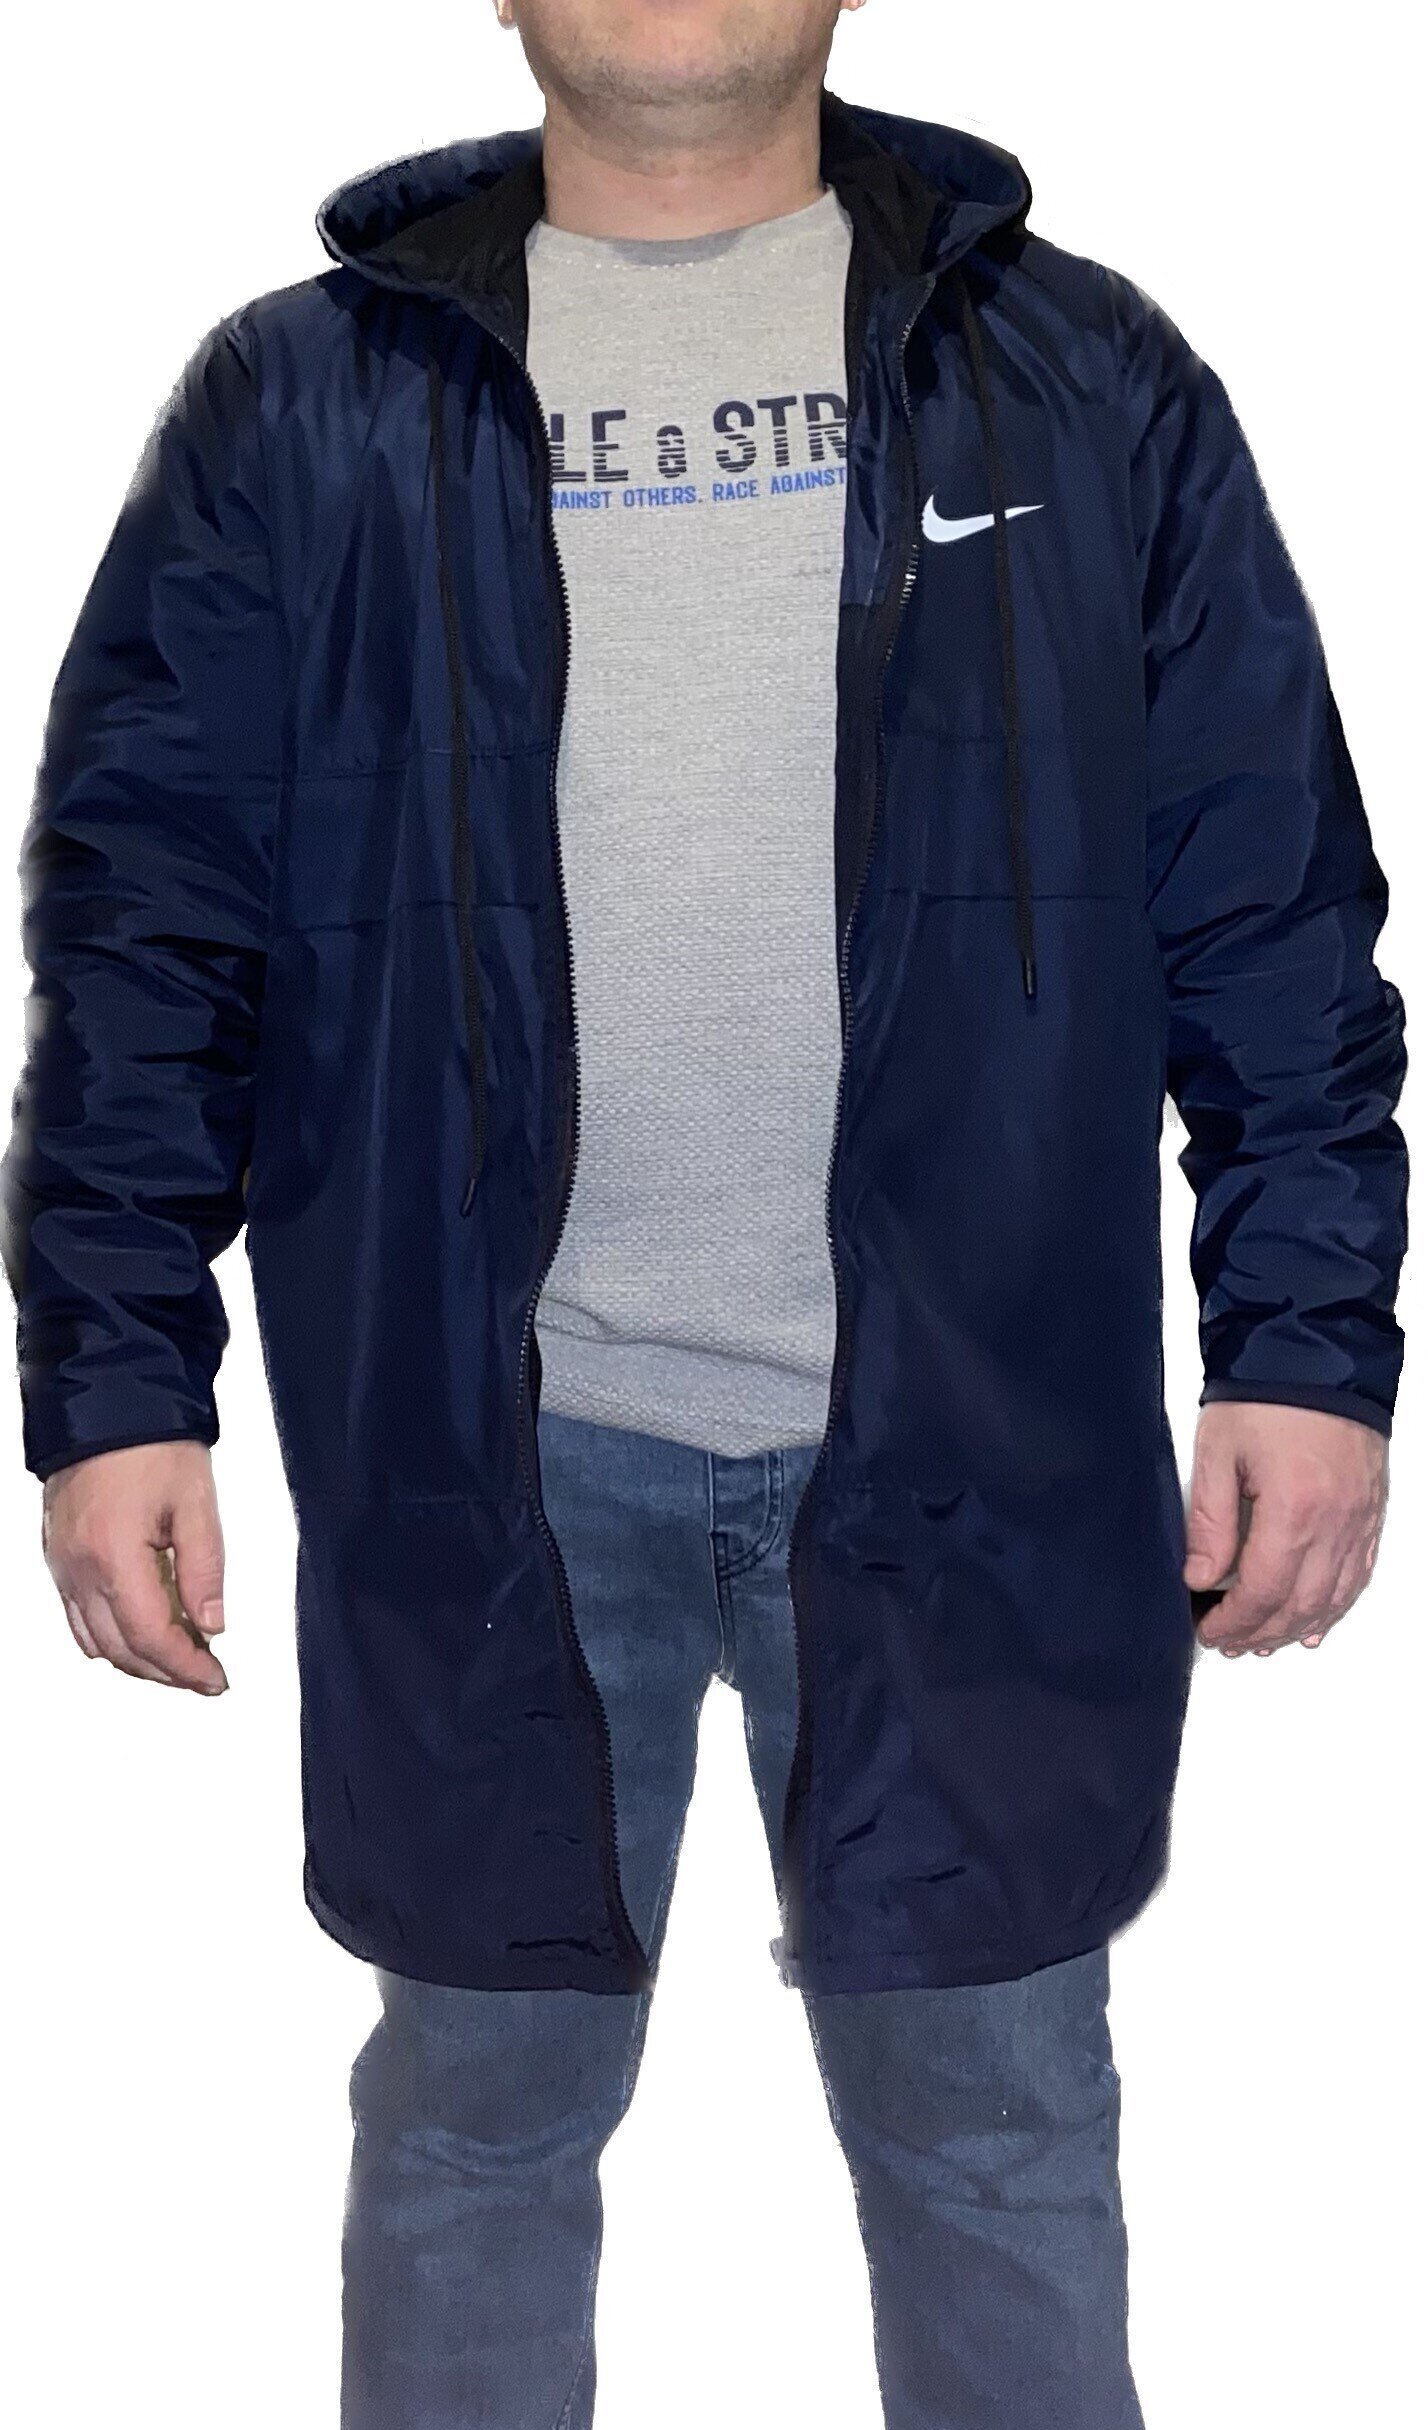 Де купити чоловічу куртку великого розміру на весну в Україні - фото pic_f5af64ffa738b96c3eaadcf6acf0e601_1920x9000_1.jpg